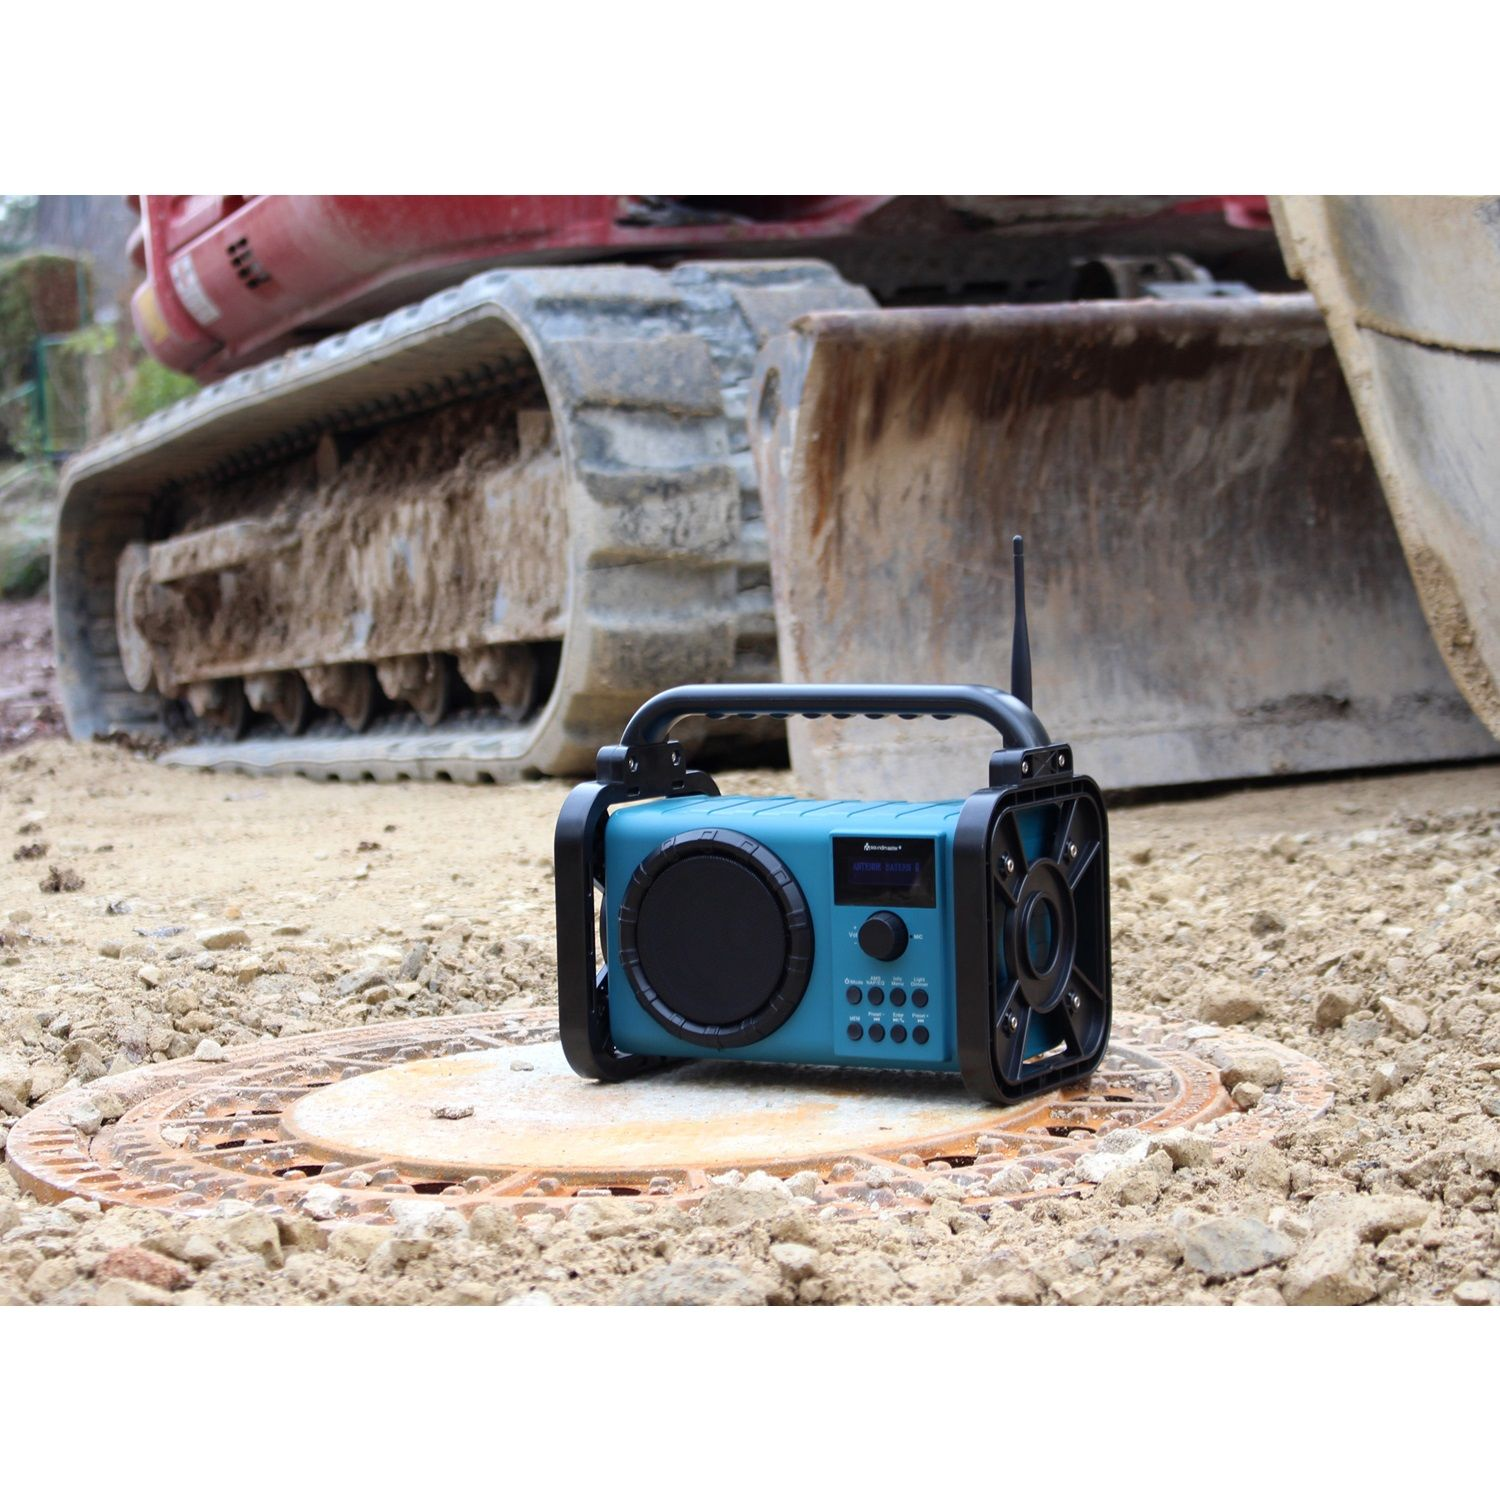 SOUNDMASTER DAB80 Multifunktionsradio, blau FM, AM, DAB+, DAB, DAB+, FM, Bluetooth